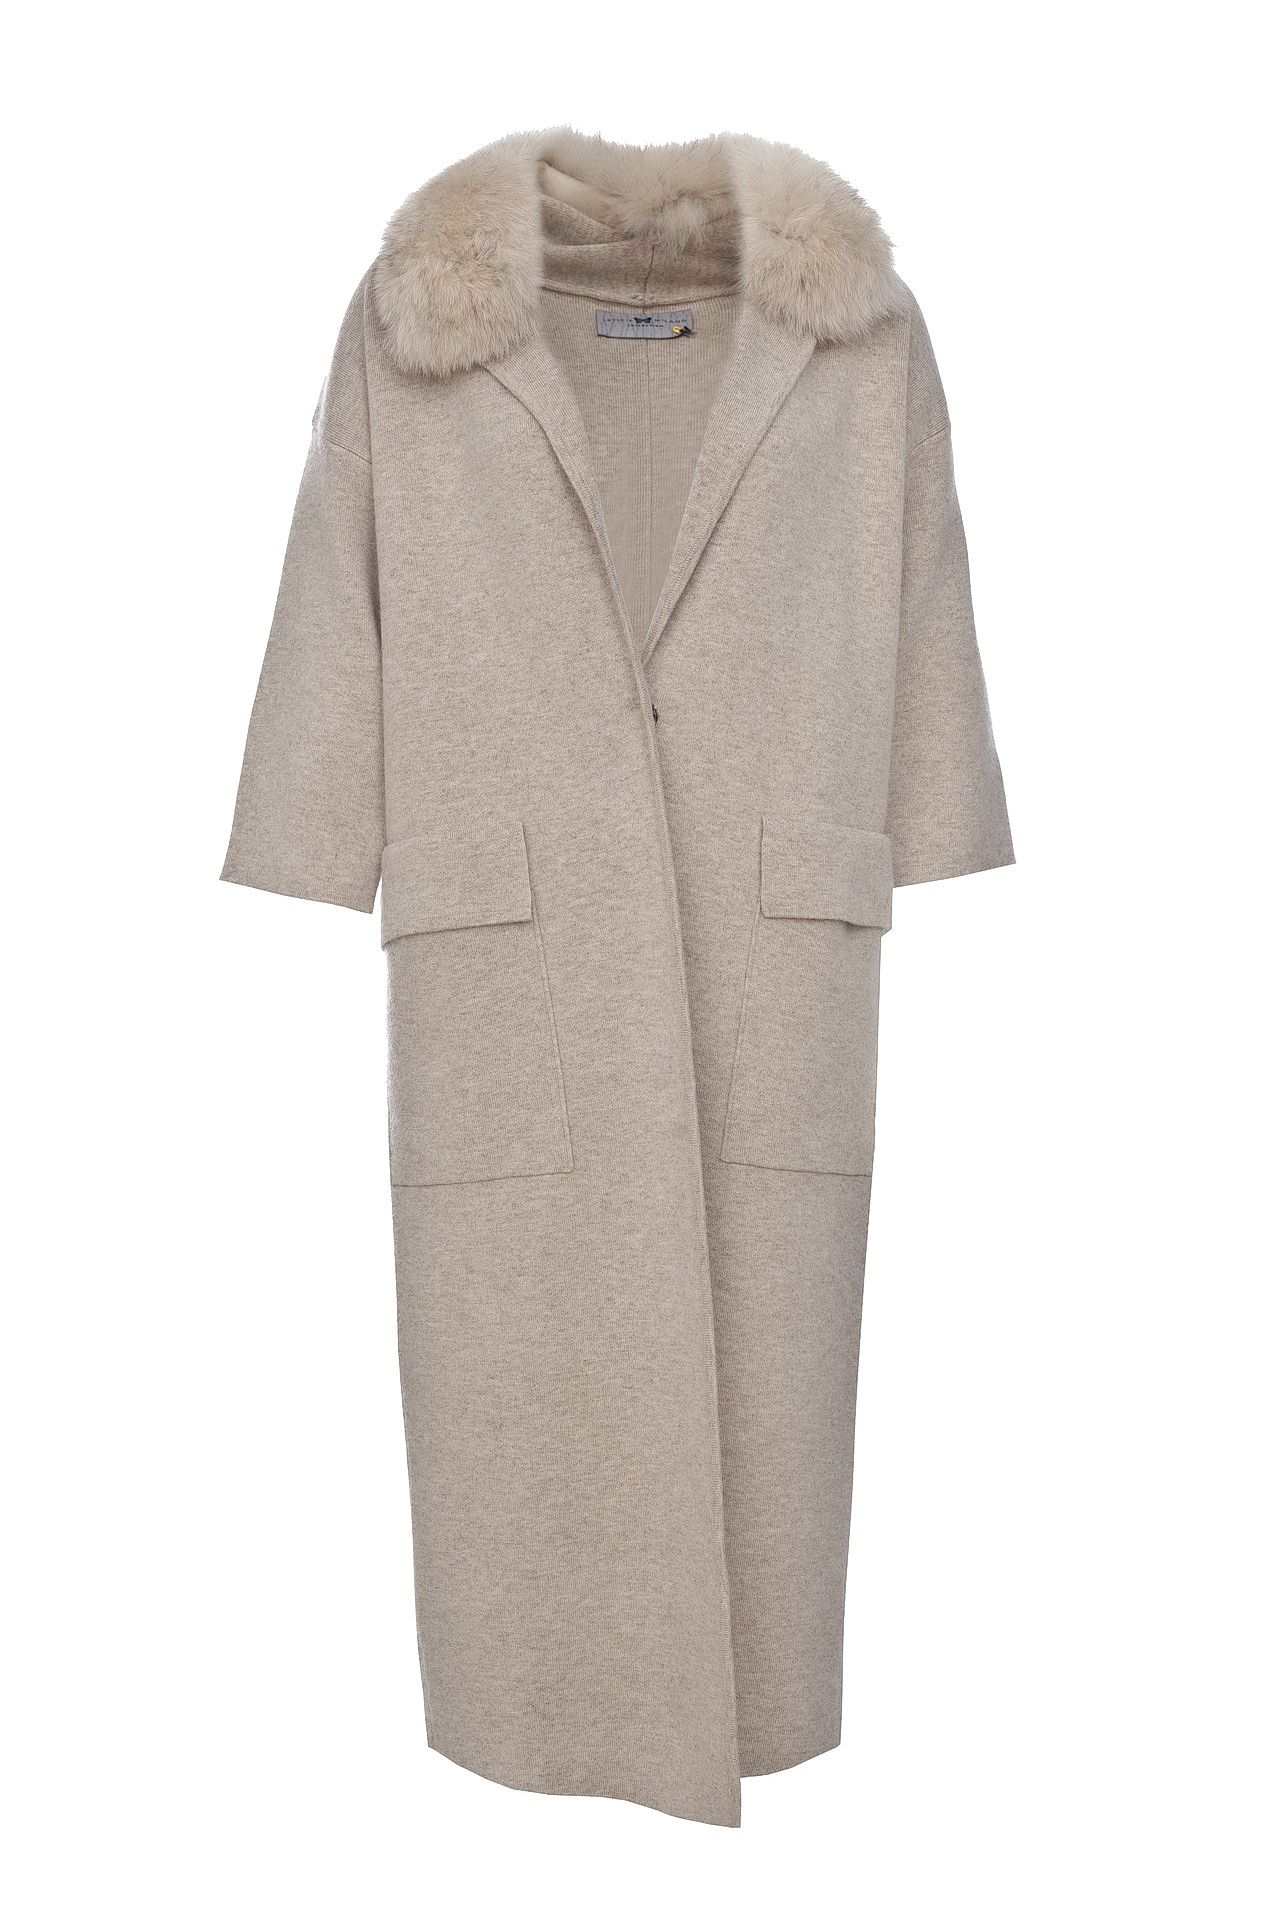 Одежда женская Пальто LETICIA MILANO (215578/18.1). Купить за 16500 руб.